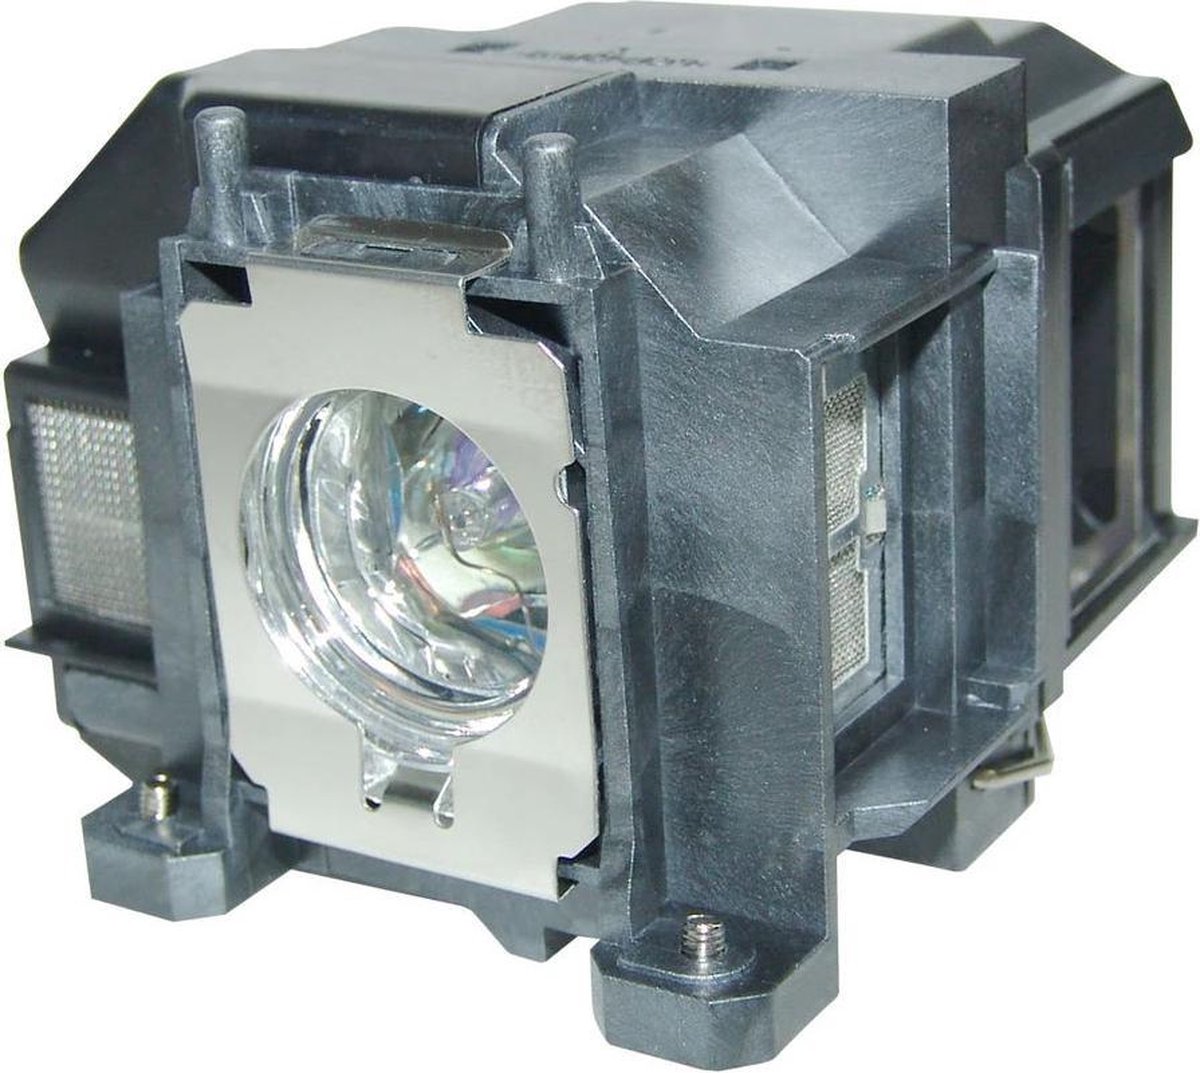 Beamerlamp geschikt voor de EPSON EB-C30XE beamer, lamp code LP67 / V13H010L67. Bevat originele P-VIP lamp, prestaties gelijk aan origineel.